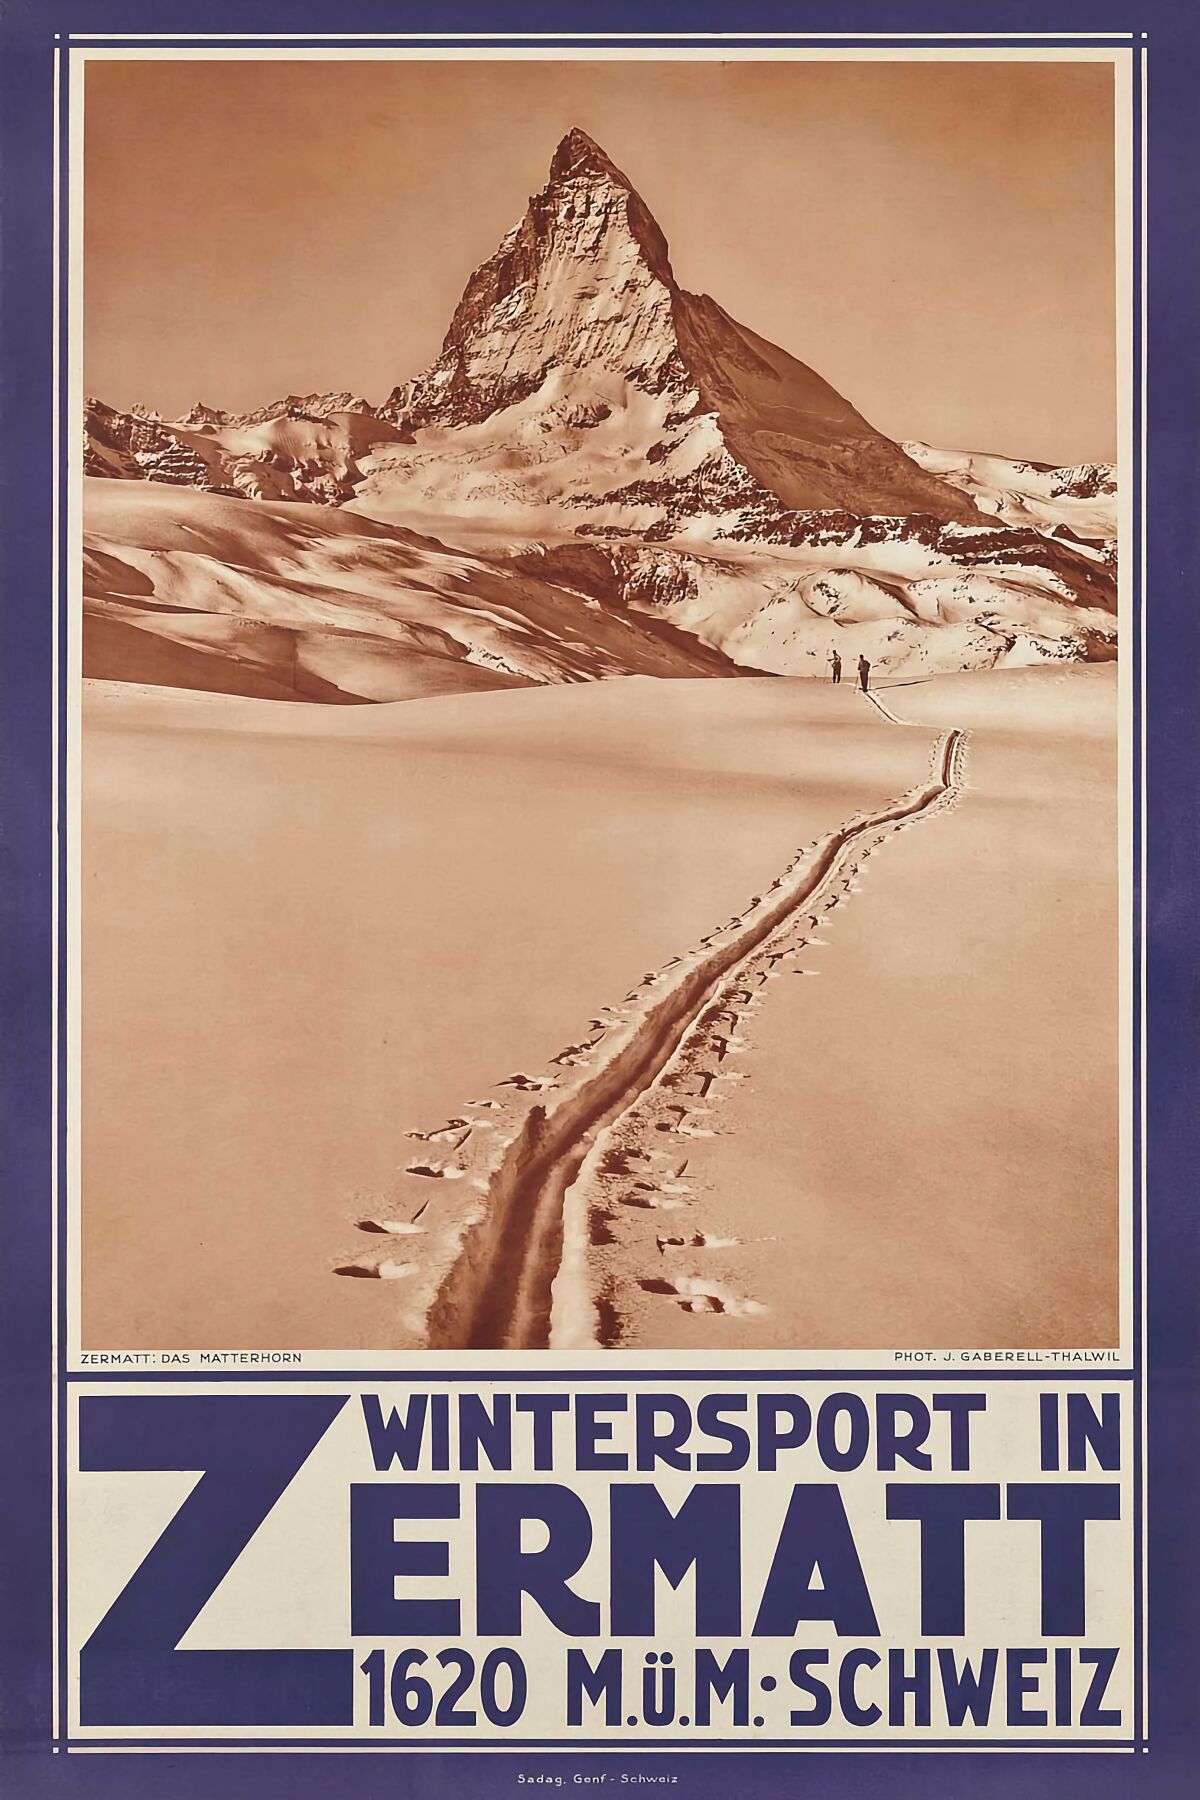 Wintersport in Zermatt  (unknown artist) - 1929